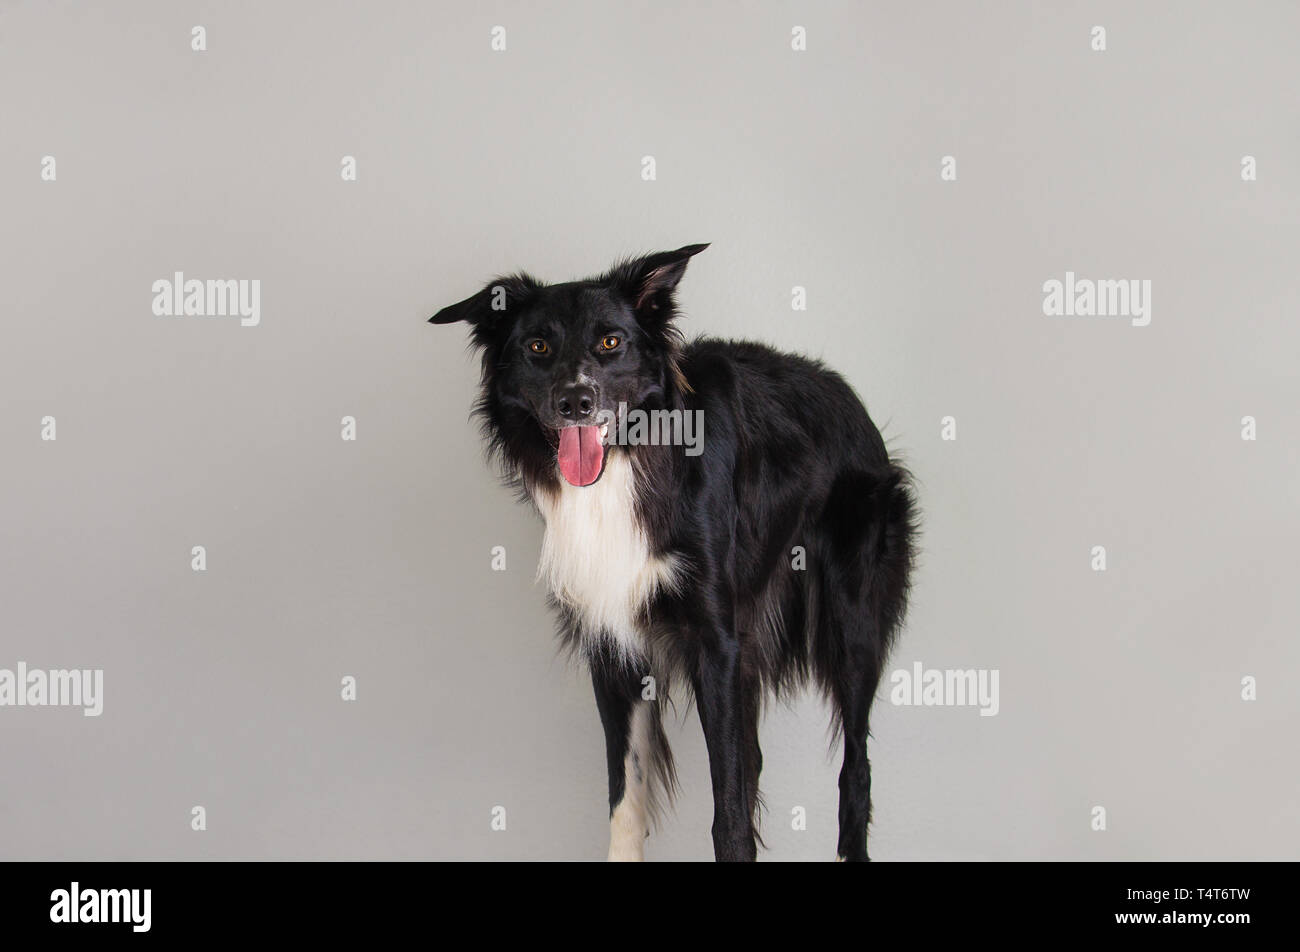 Porträt einer adorable reinrassigen Border Collie hund Kamera über graue  Wand Hintergrund isoliert. Lustige schwarze und weiße Welpen zeigen, Zunge,  mo Stockfotografie - Alamy